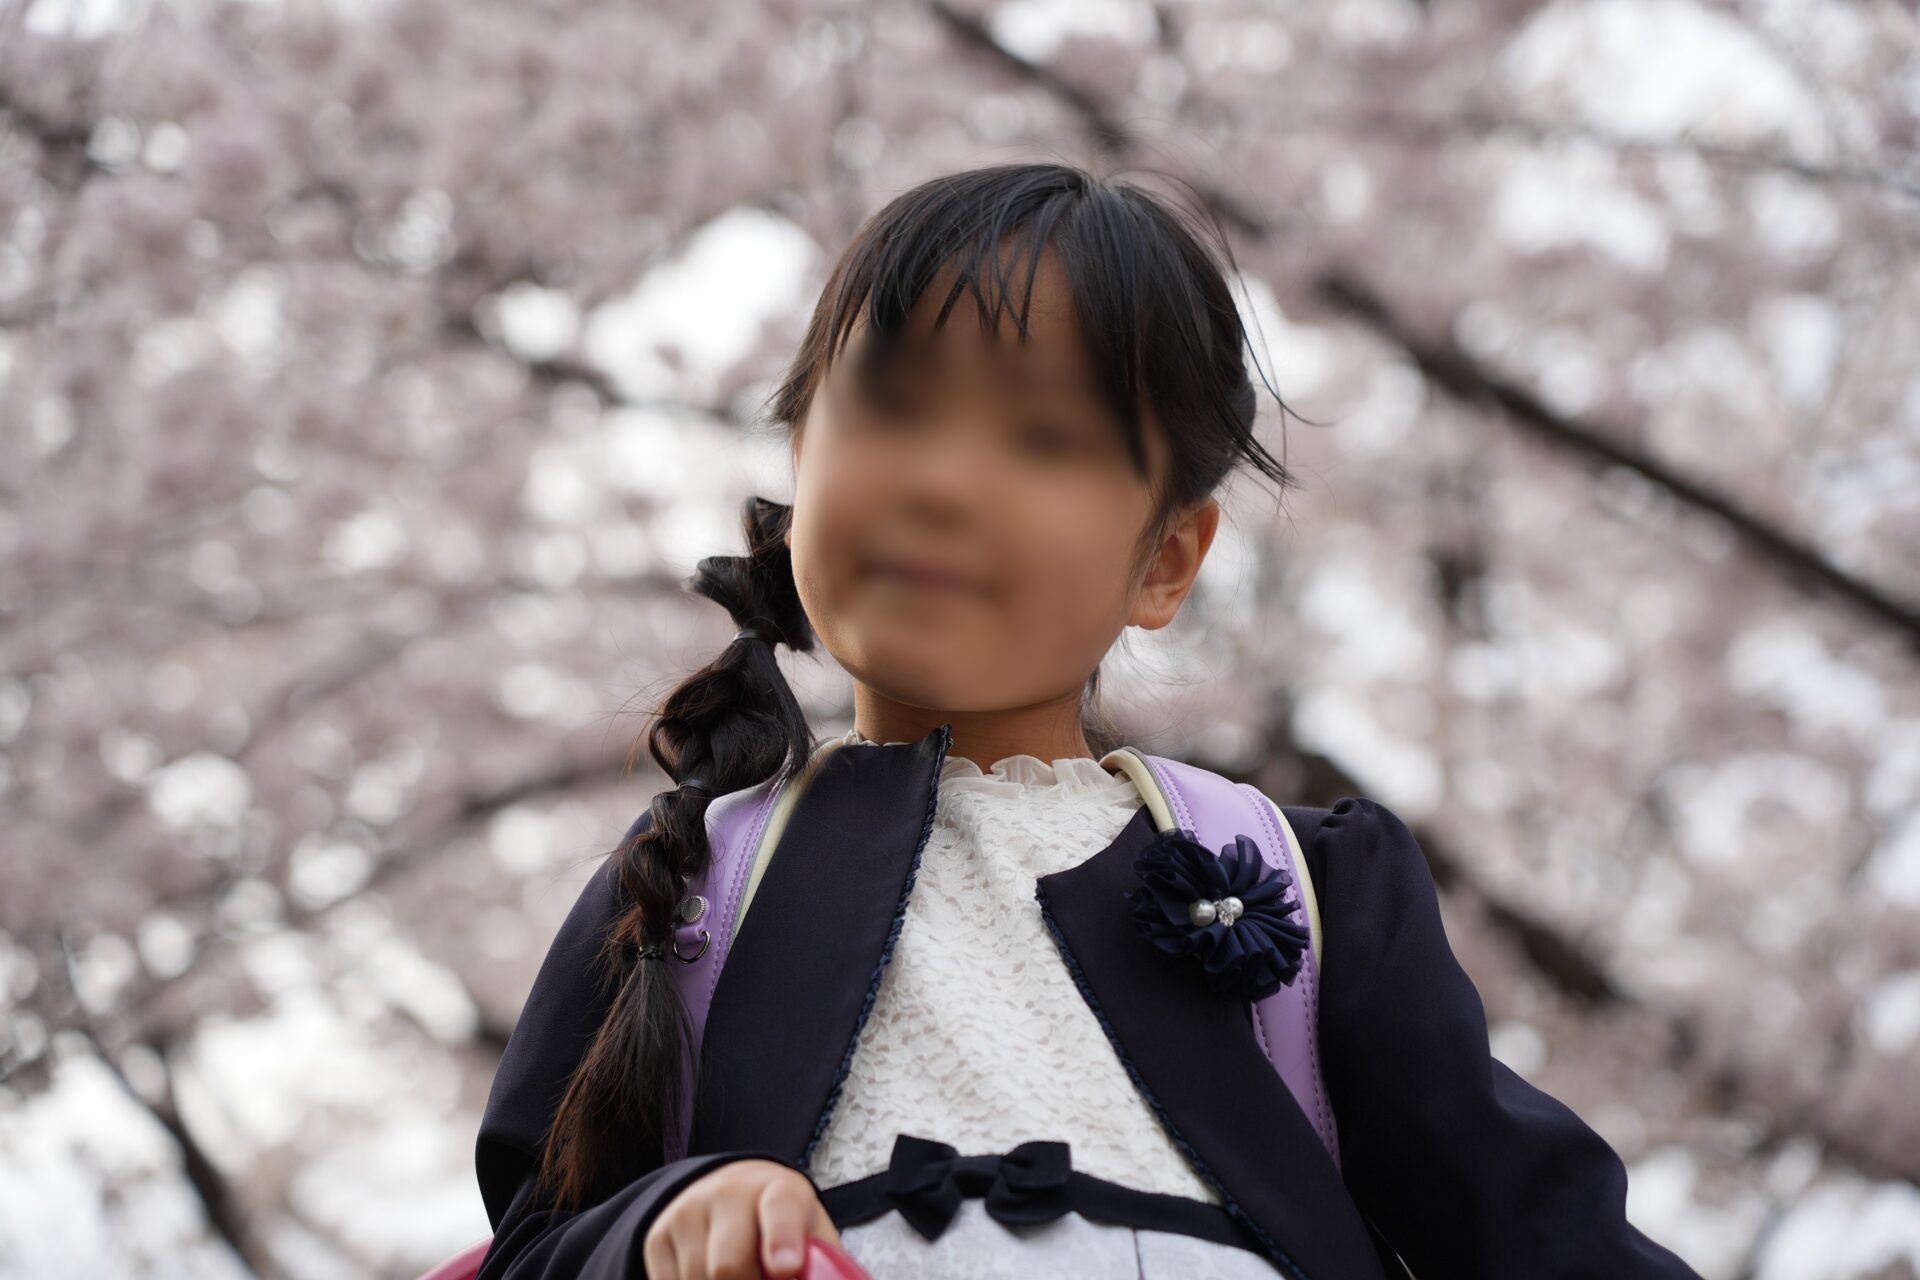 桜と子供の撮影でローアングルで見上げるように撮った写真